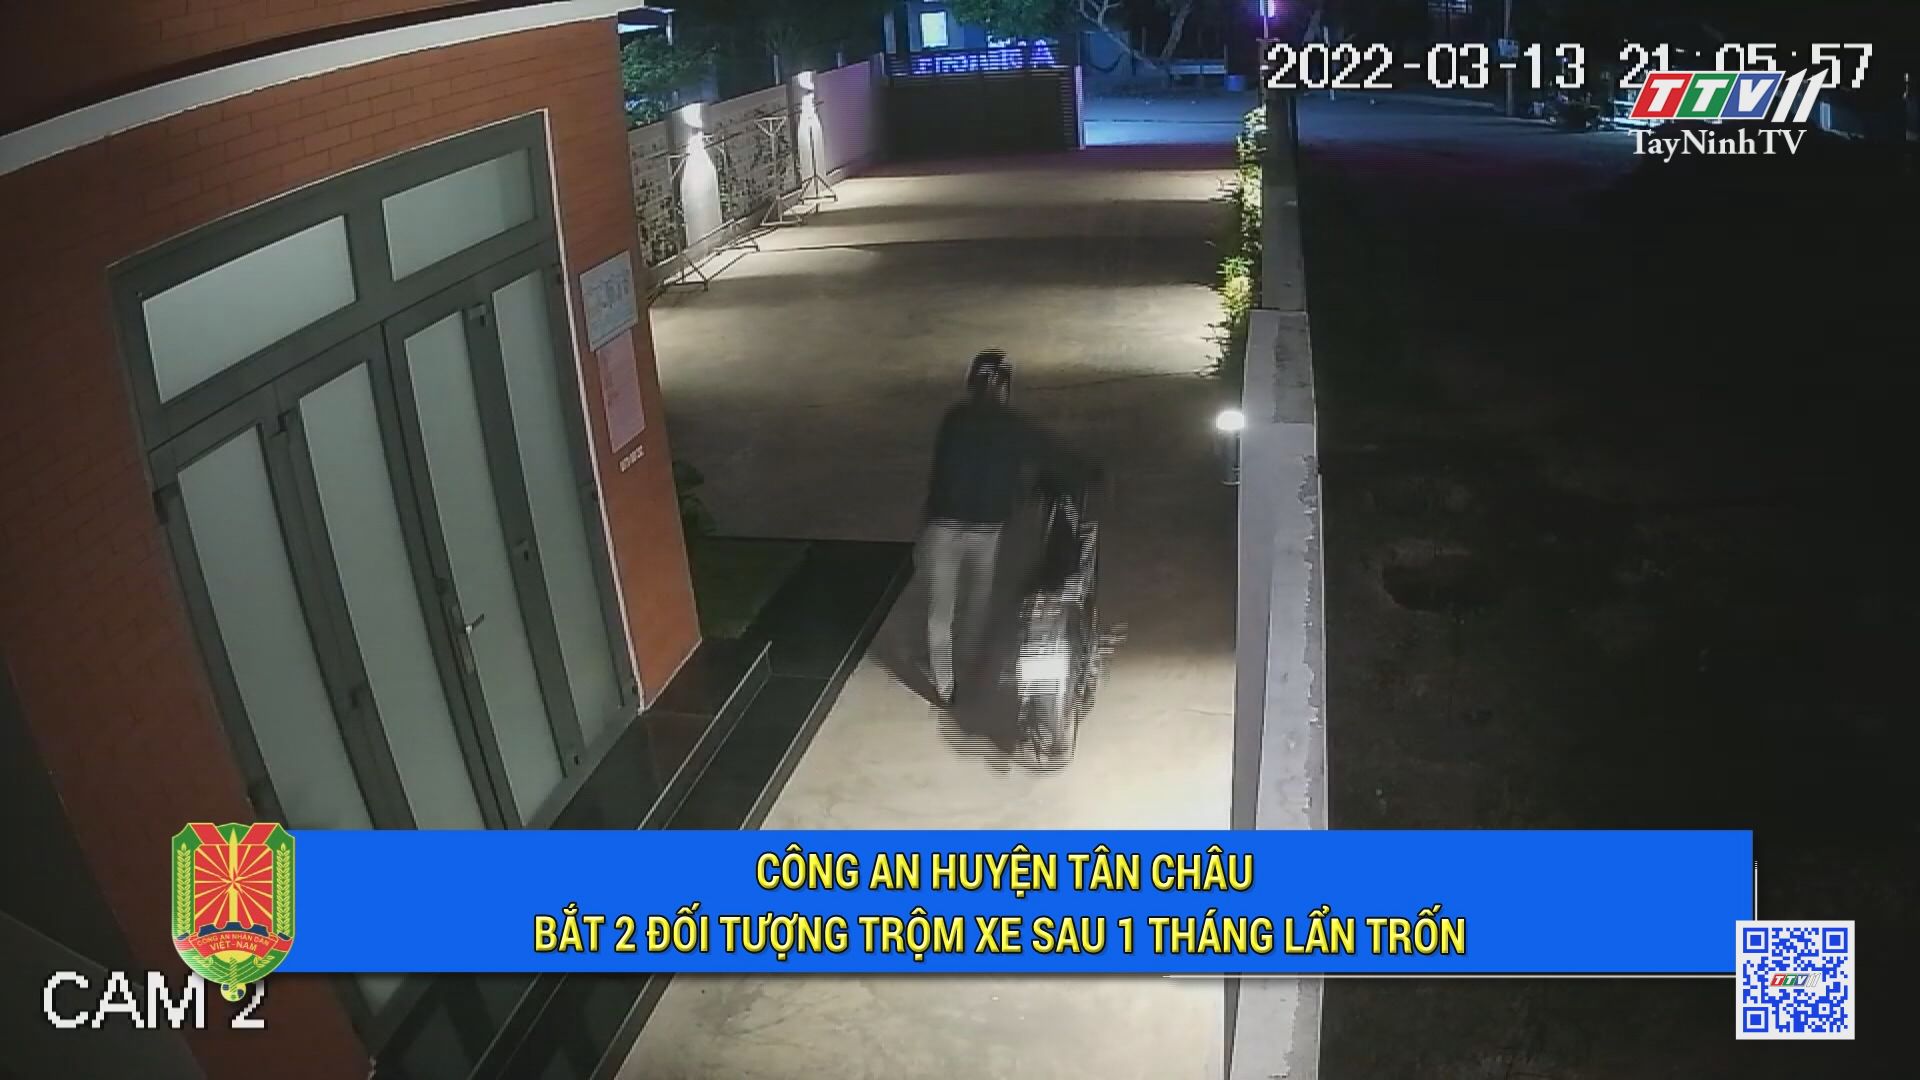 Công an huyện Tân Châu bắt 2 đối tượng tr.ộm x.e sau 1 tháng lẩn trốn | An ninh Tây Ninh | TayNinhTV